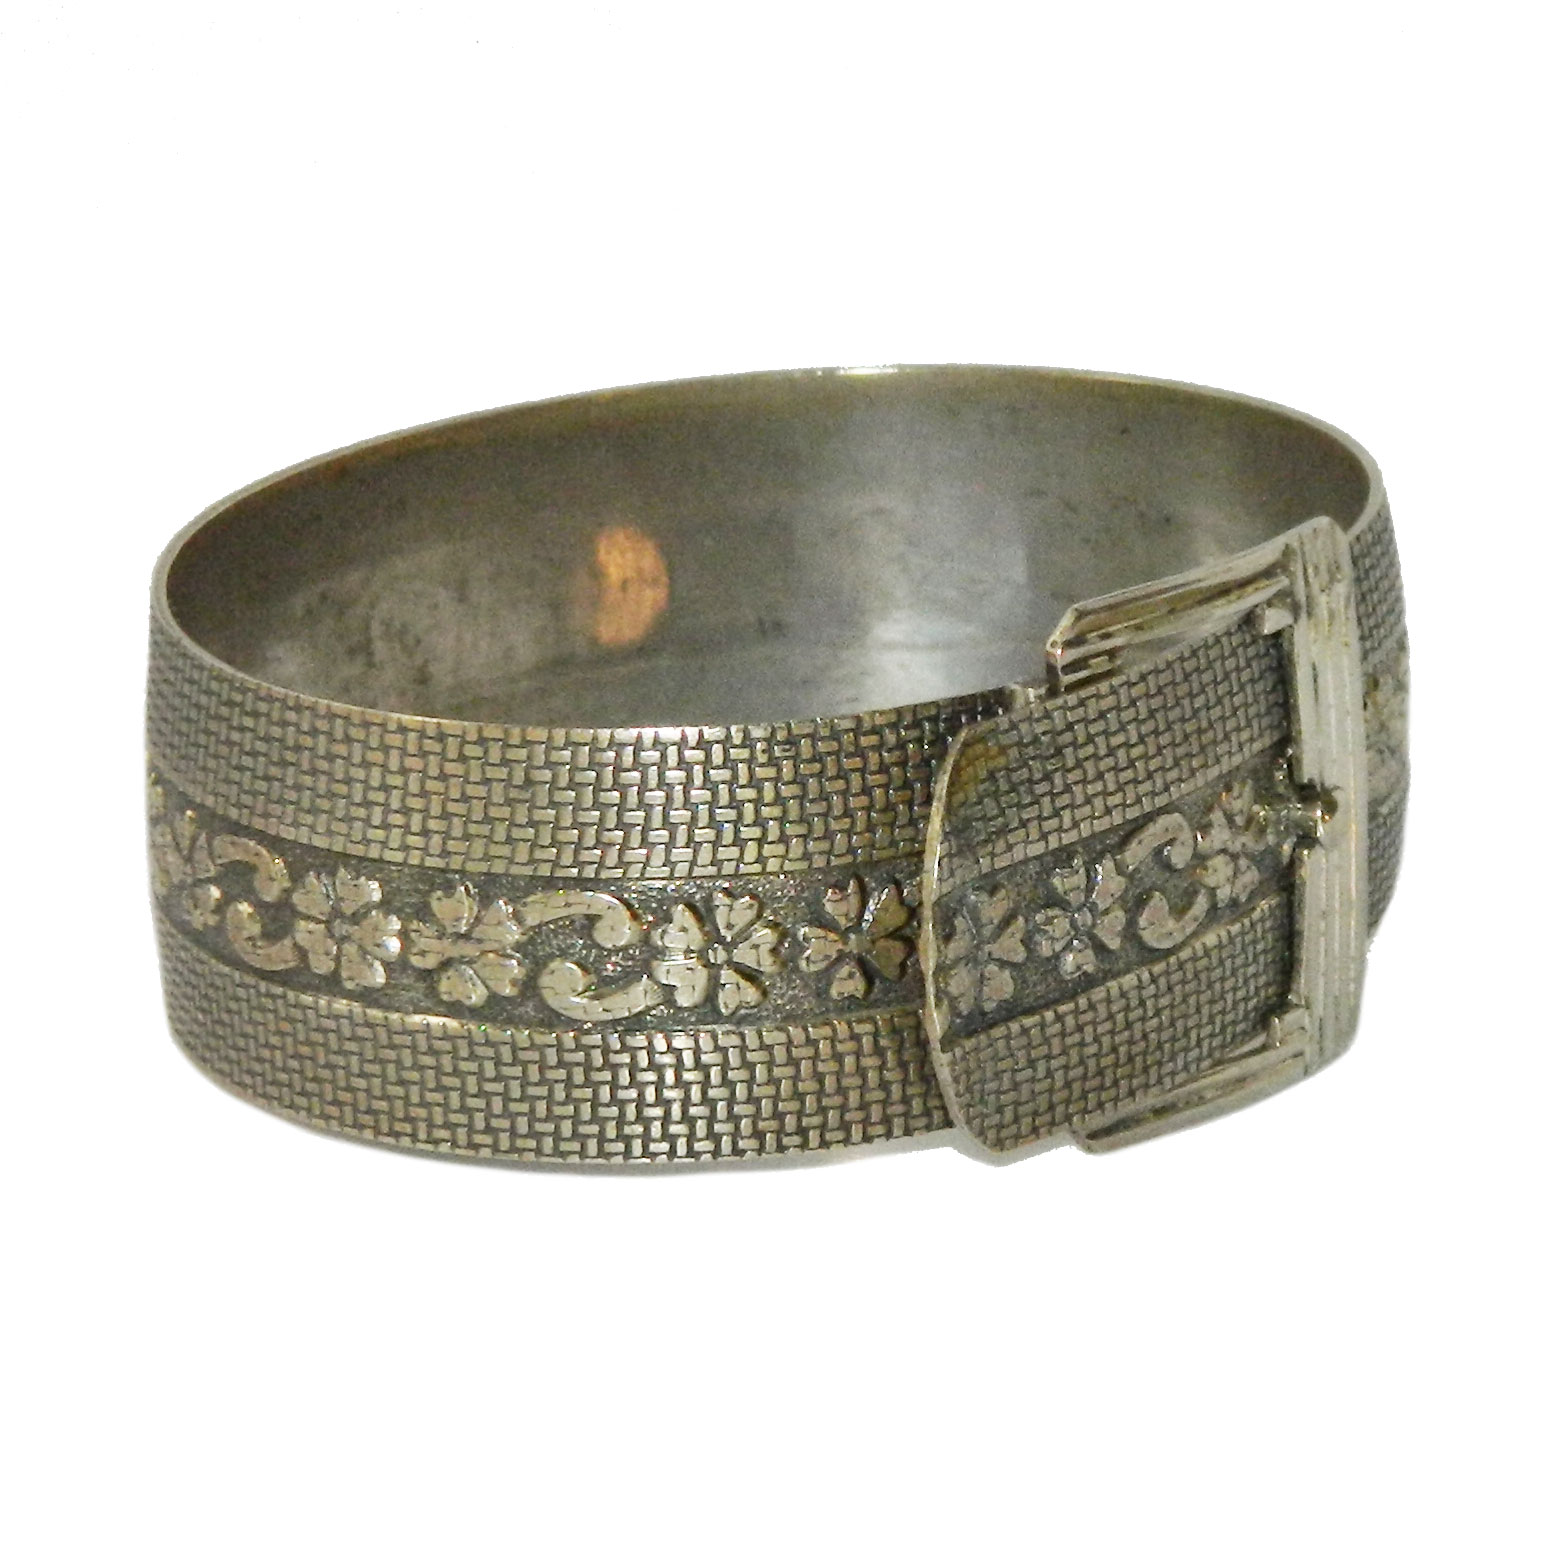 Antique belt buckle bangle bracelet